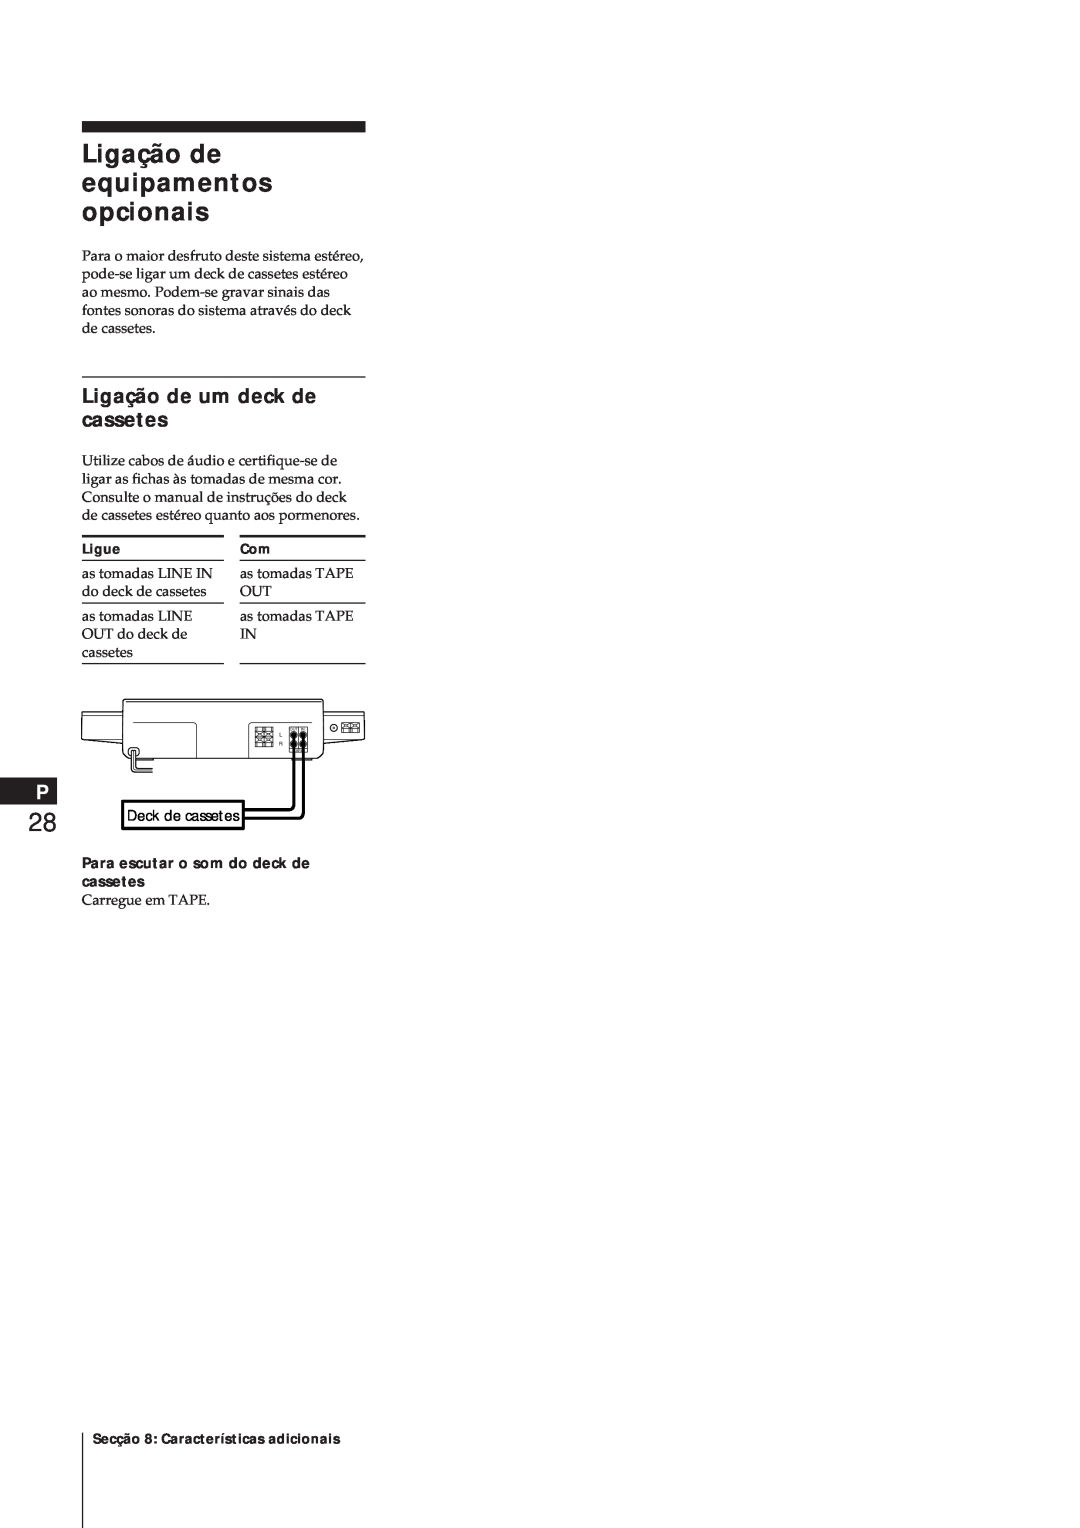 Sony MJ-L1 manual Ligação de equipamentos opcionais, Ligação de um deck de cassetes, Para escutar o som do deck de cassetes 